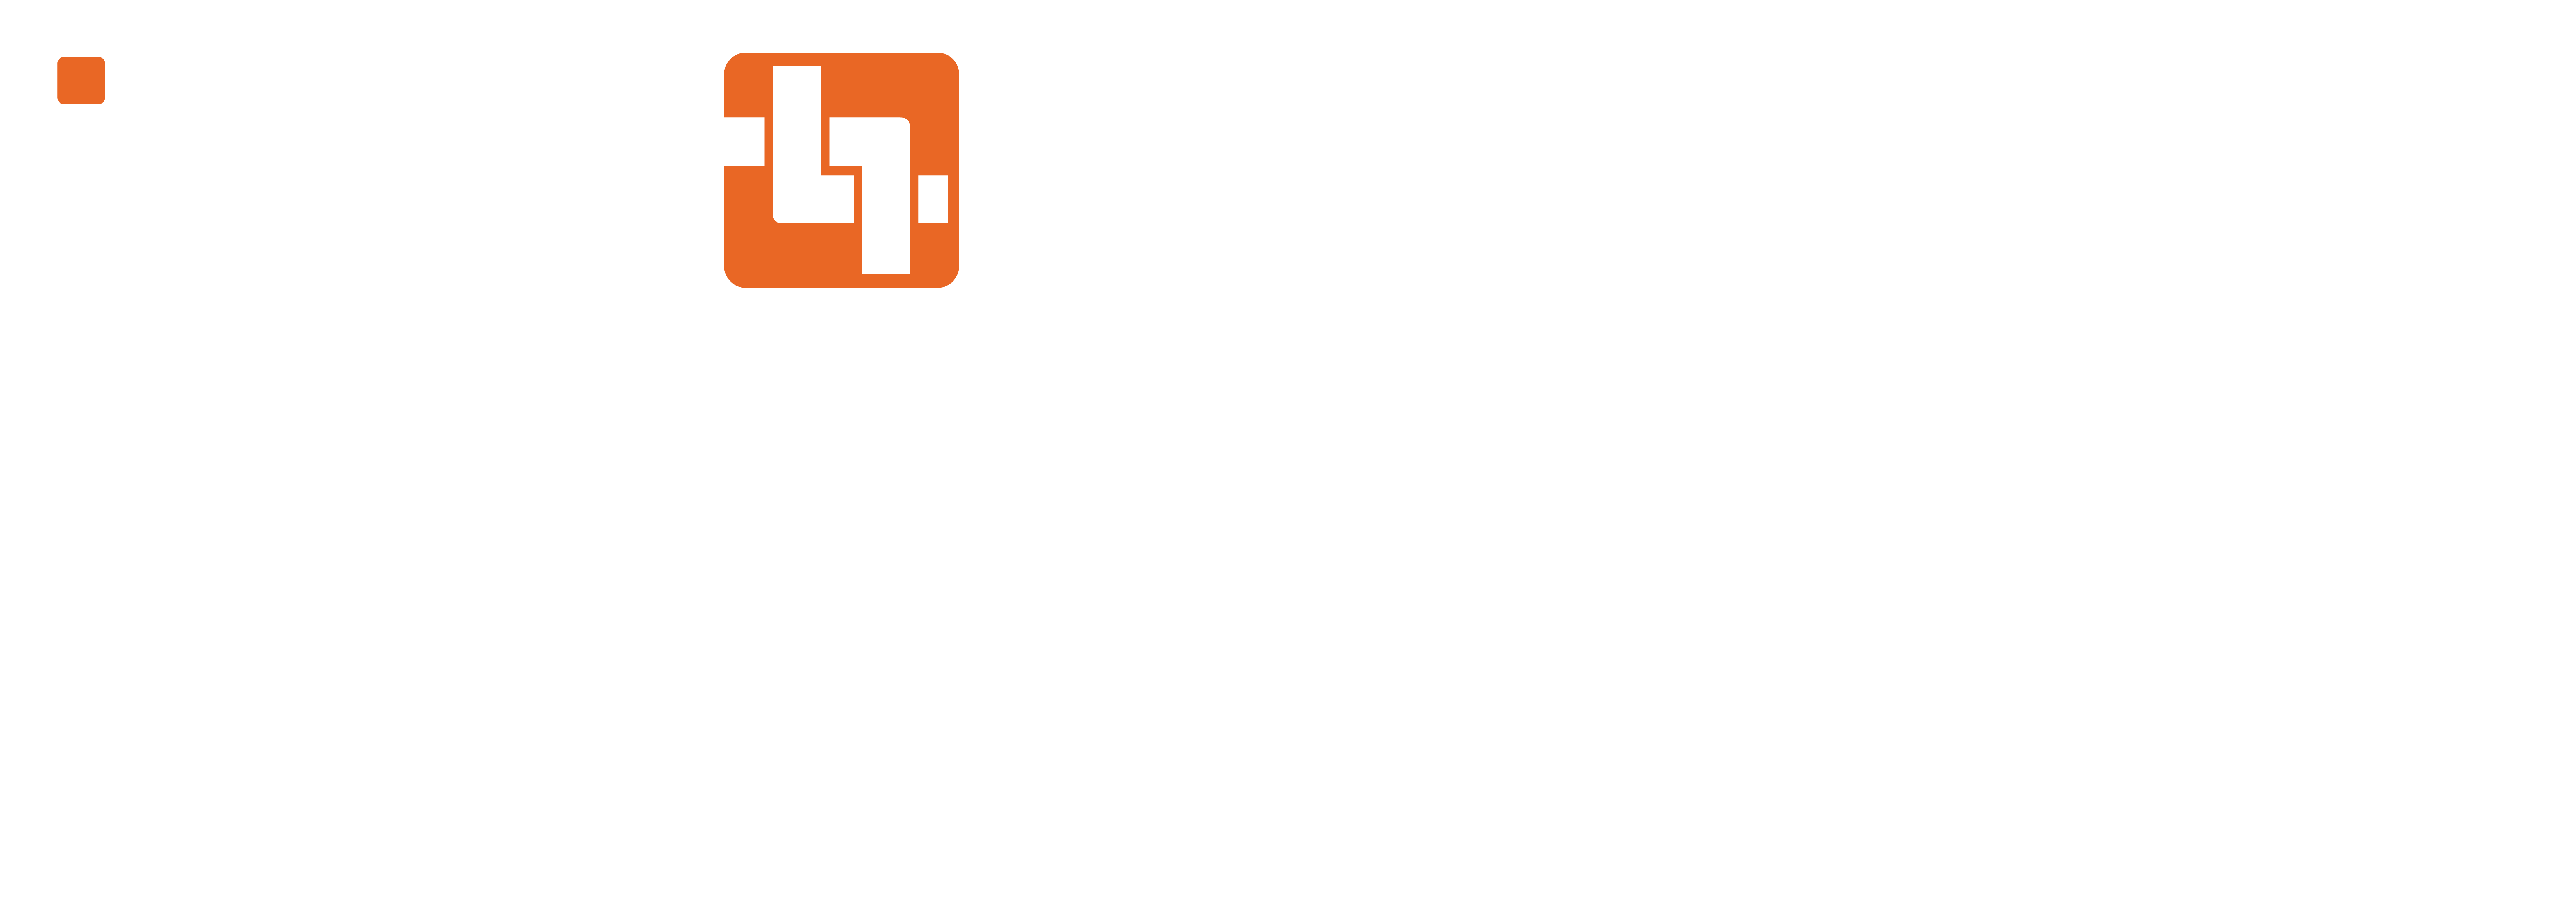 ORDRTRAK + Partnered_white+orange